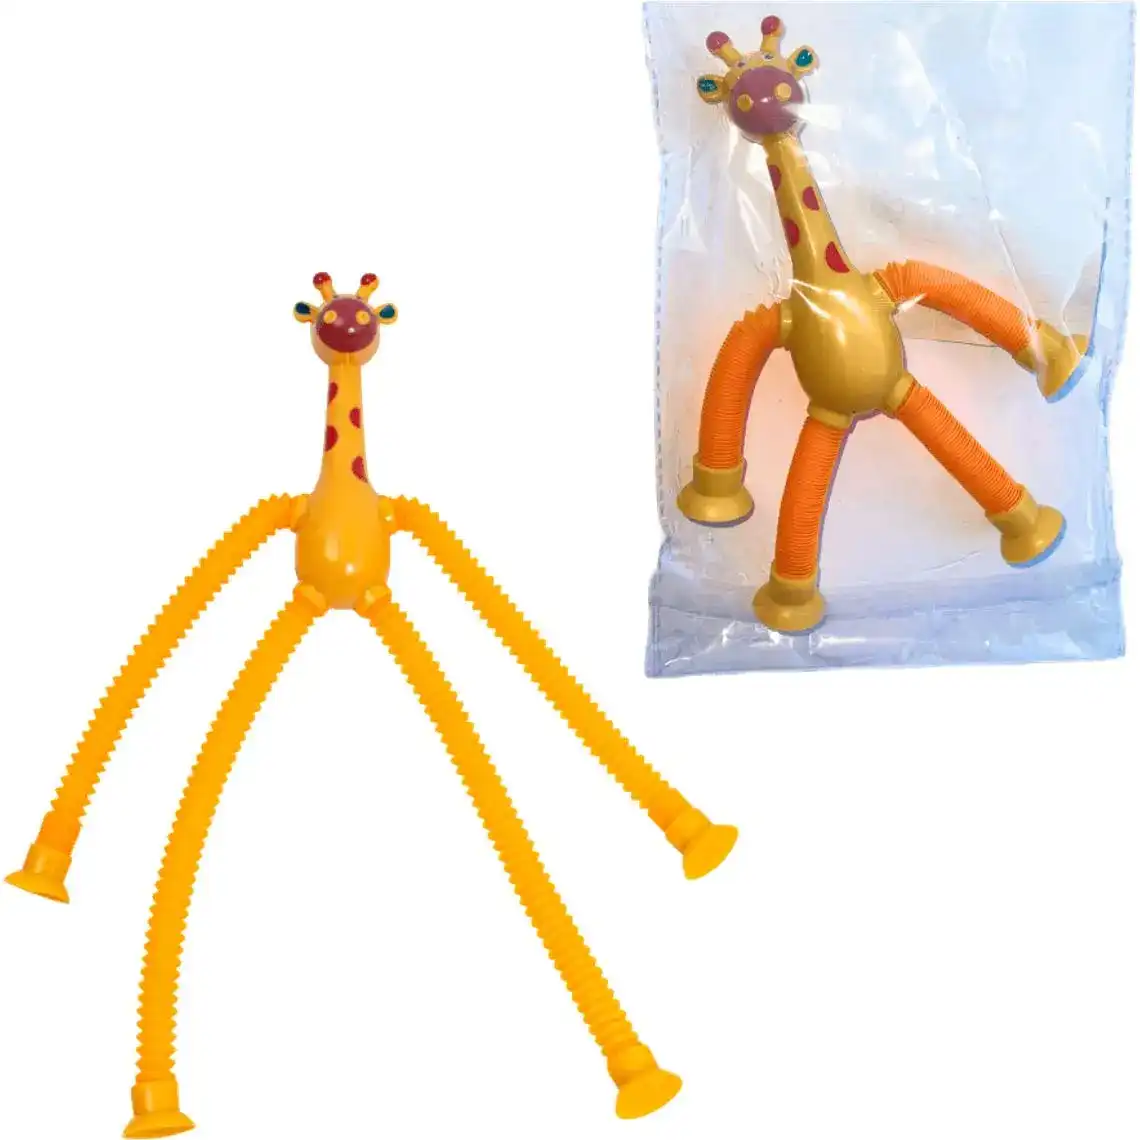 Игрушка-тянучка Жирафик